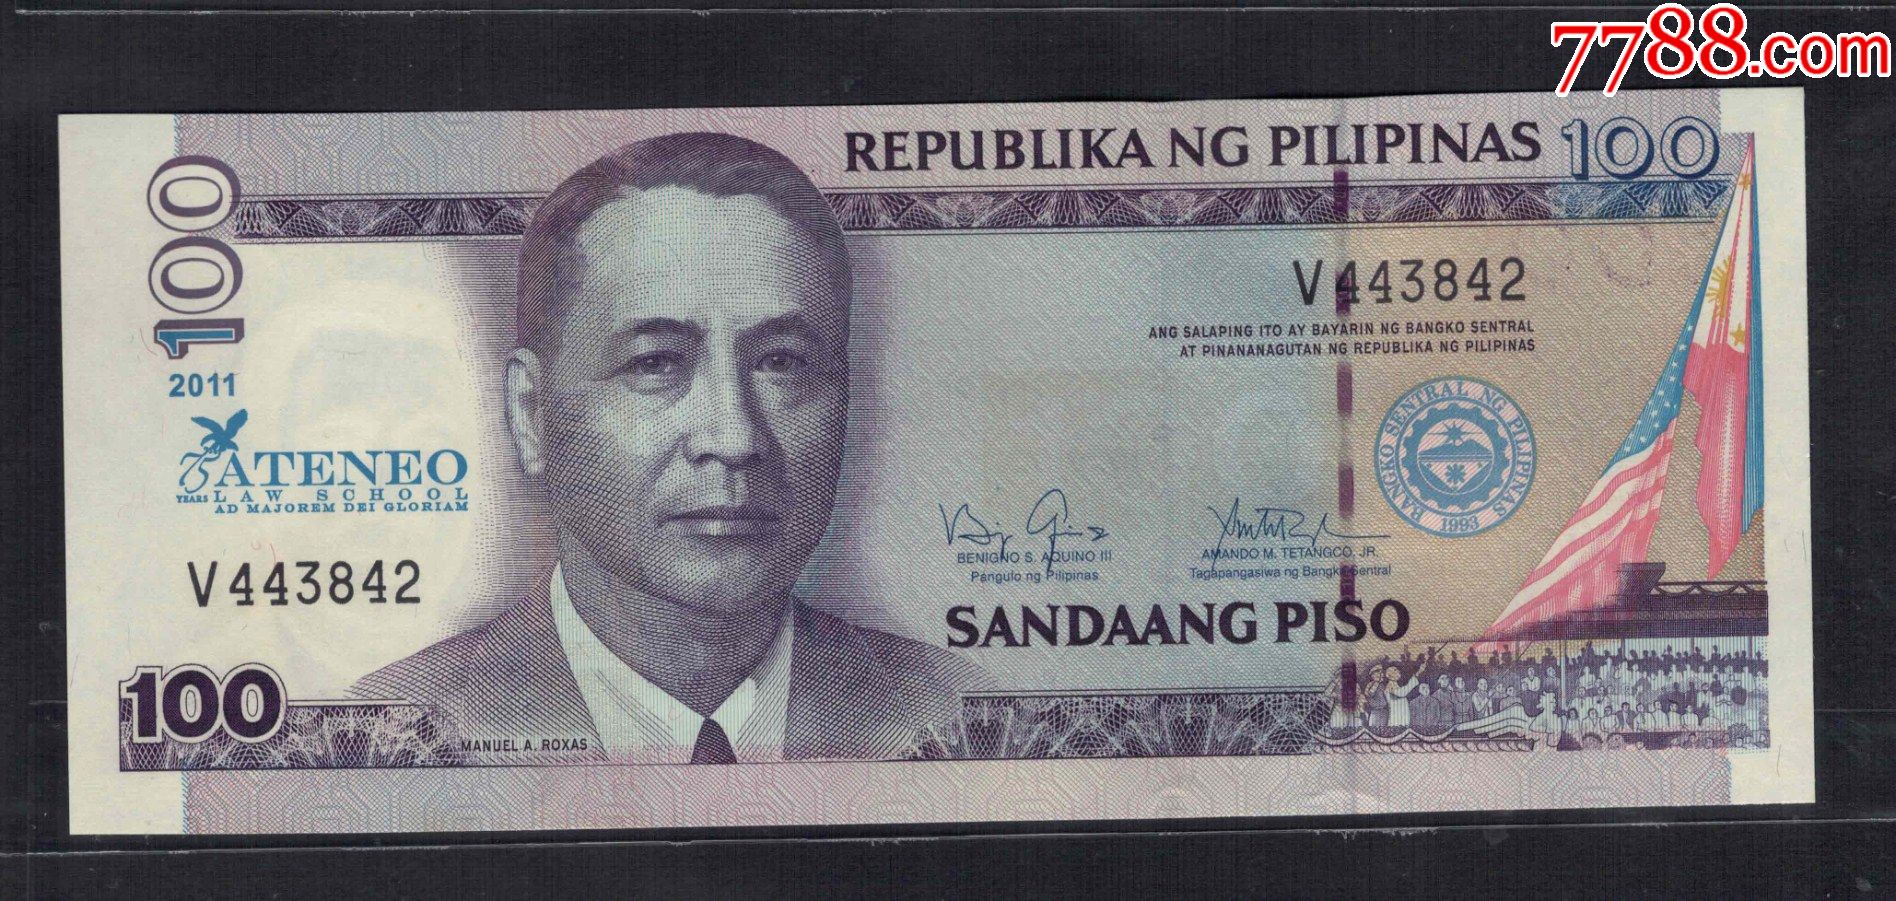 中国银行获中国人民银行正式授权将担任菲律宾人民币业务清算行